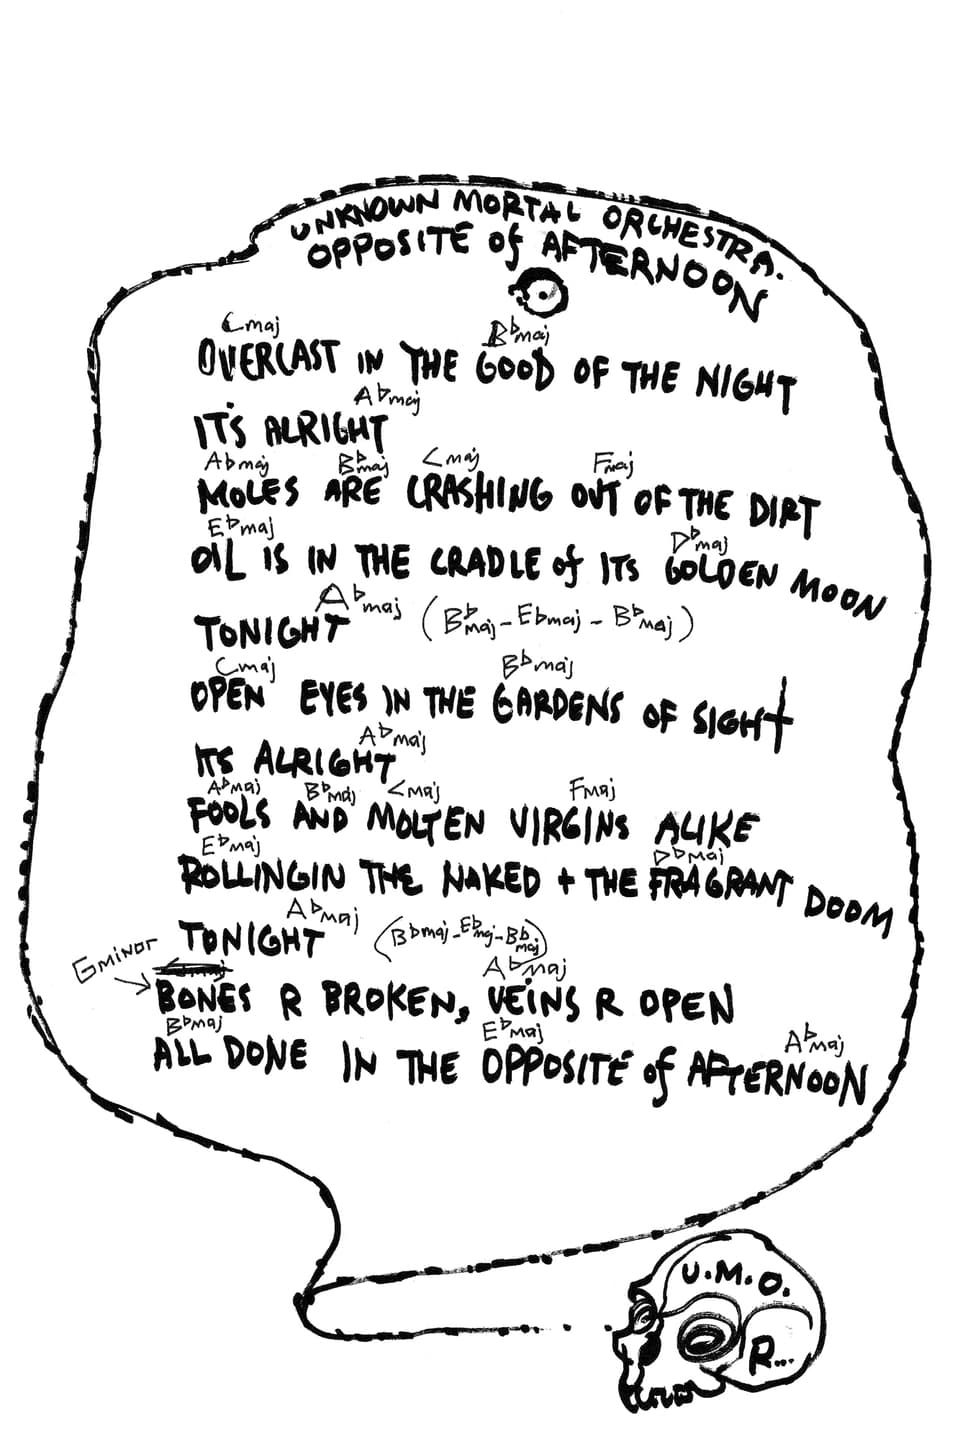 Handgeschriebener Songtext, darunter ist ein Totenschädel gezeichnet.